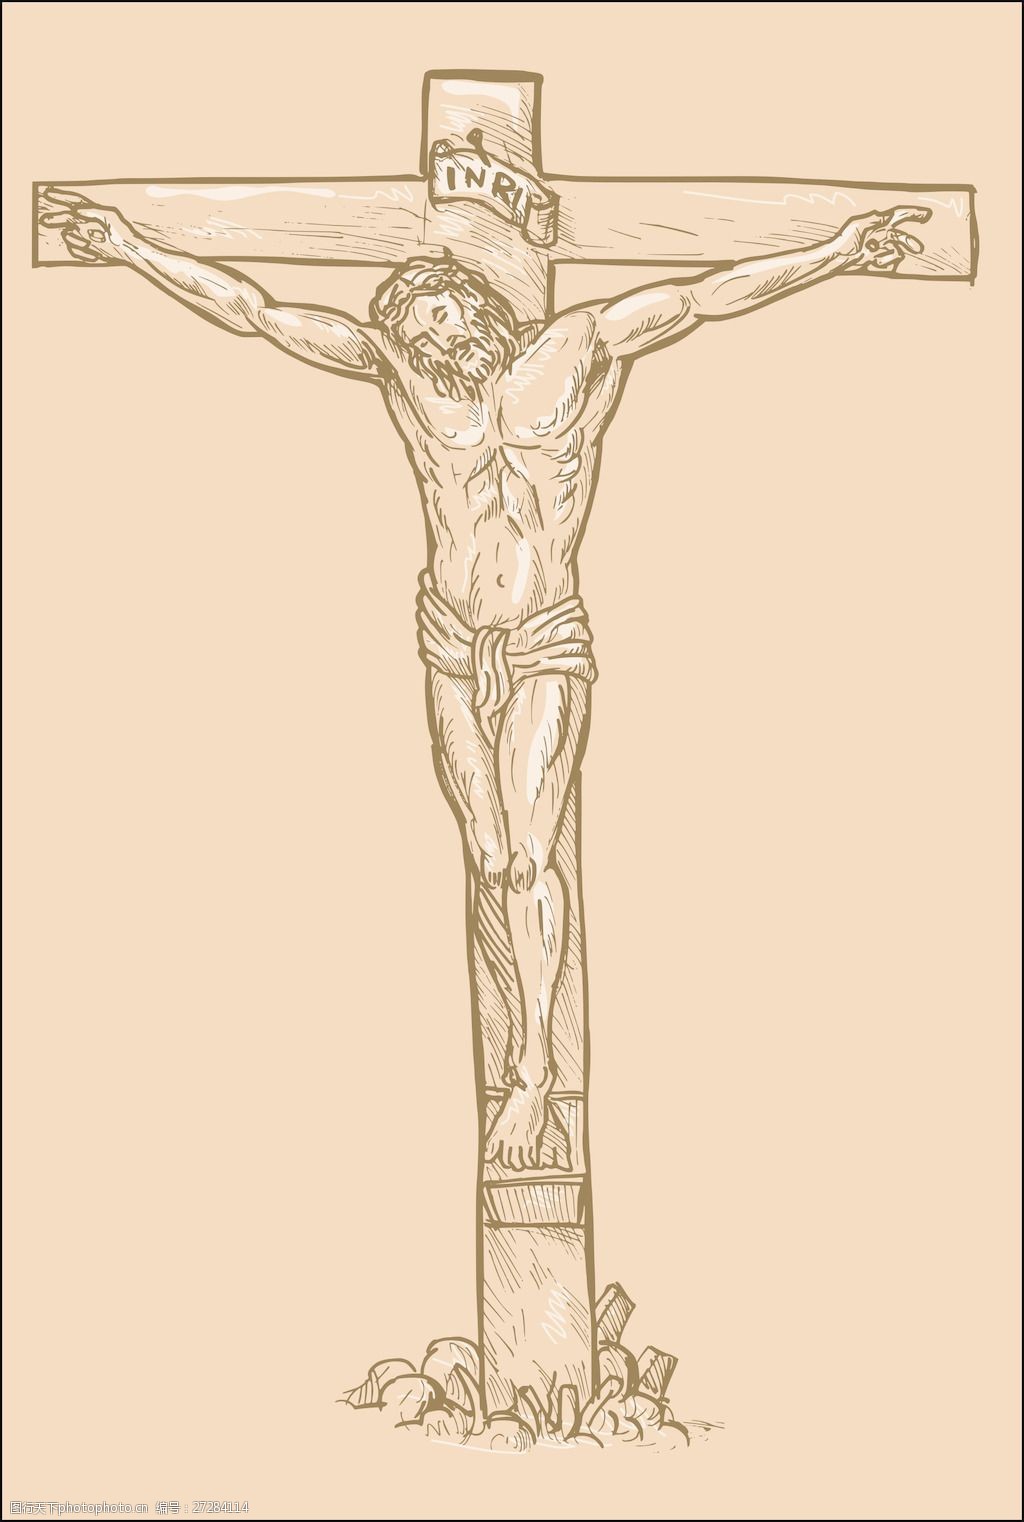 十字架简笔画 耶稣图片